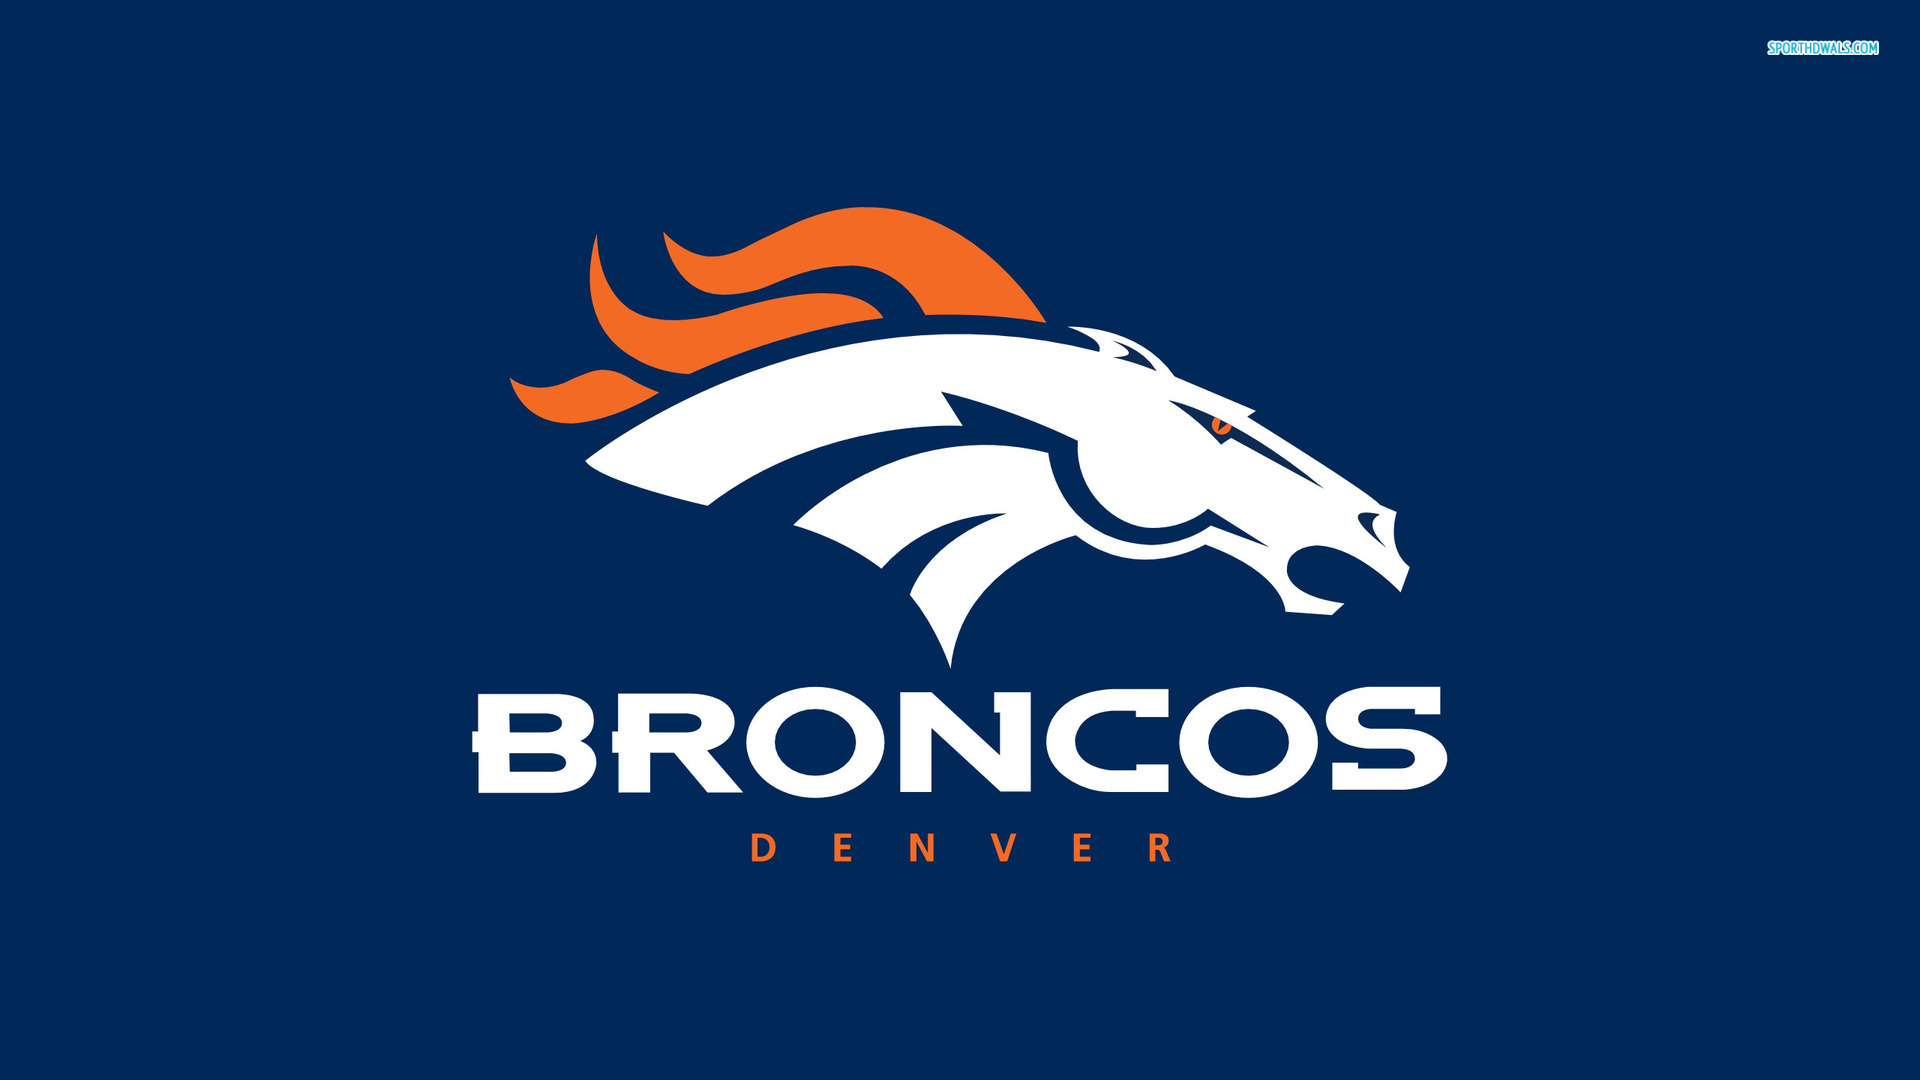  Denver Broncos wallpaper desktop background Denver Broncos